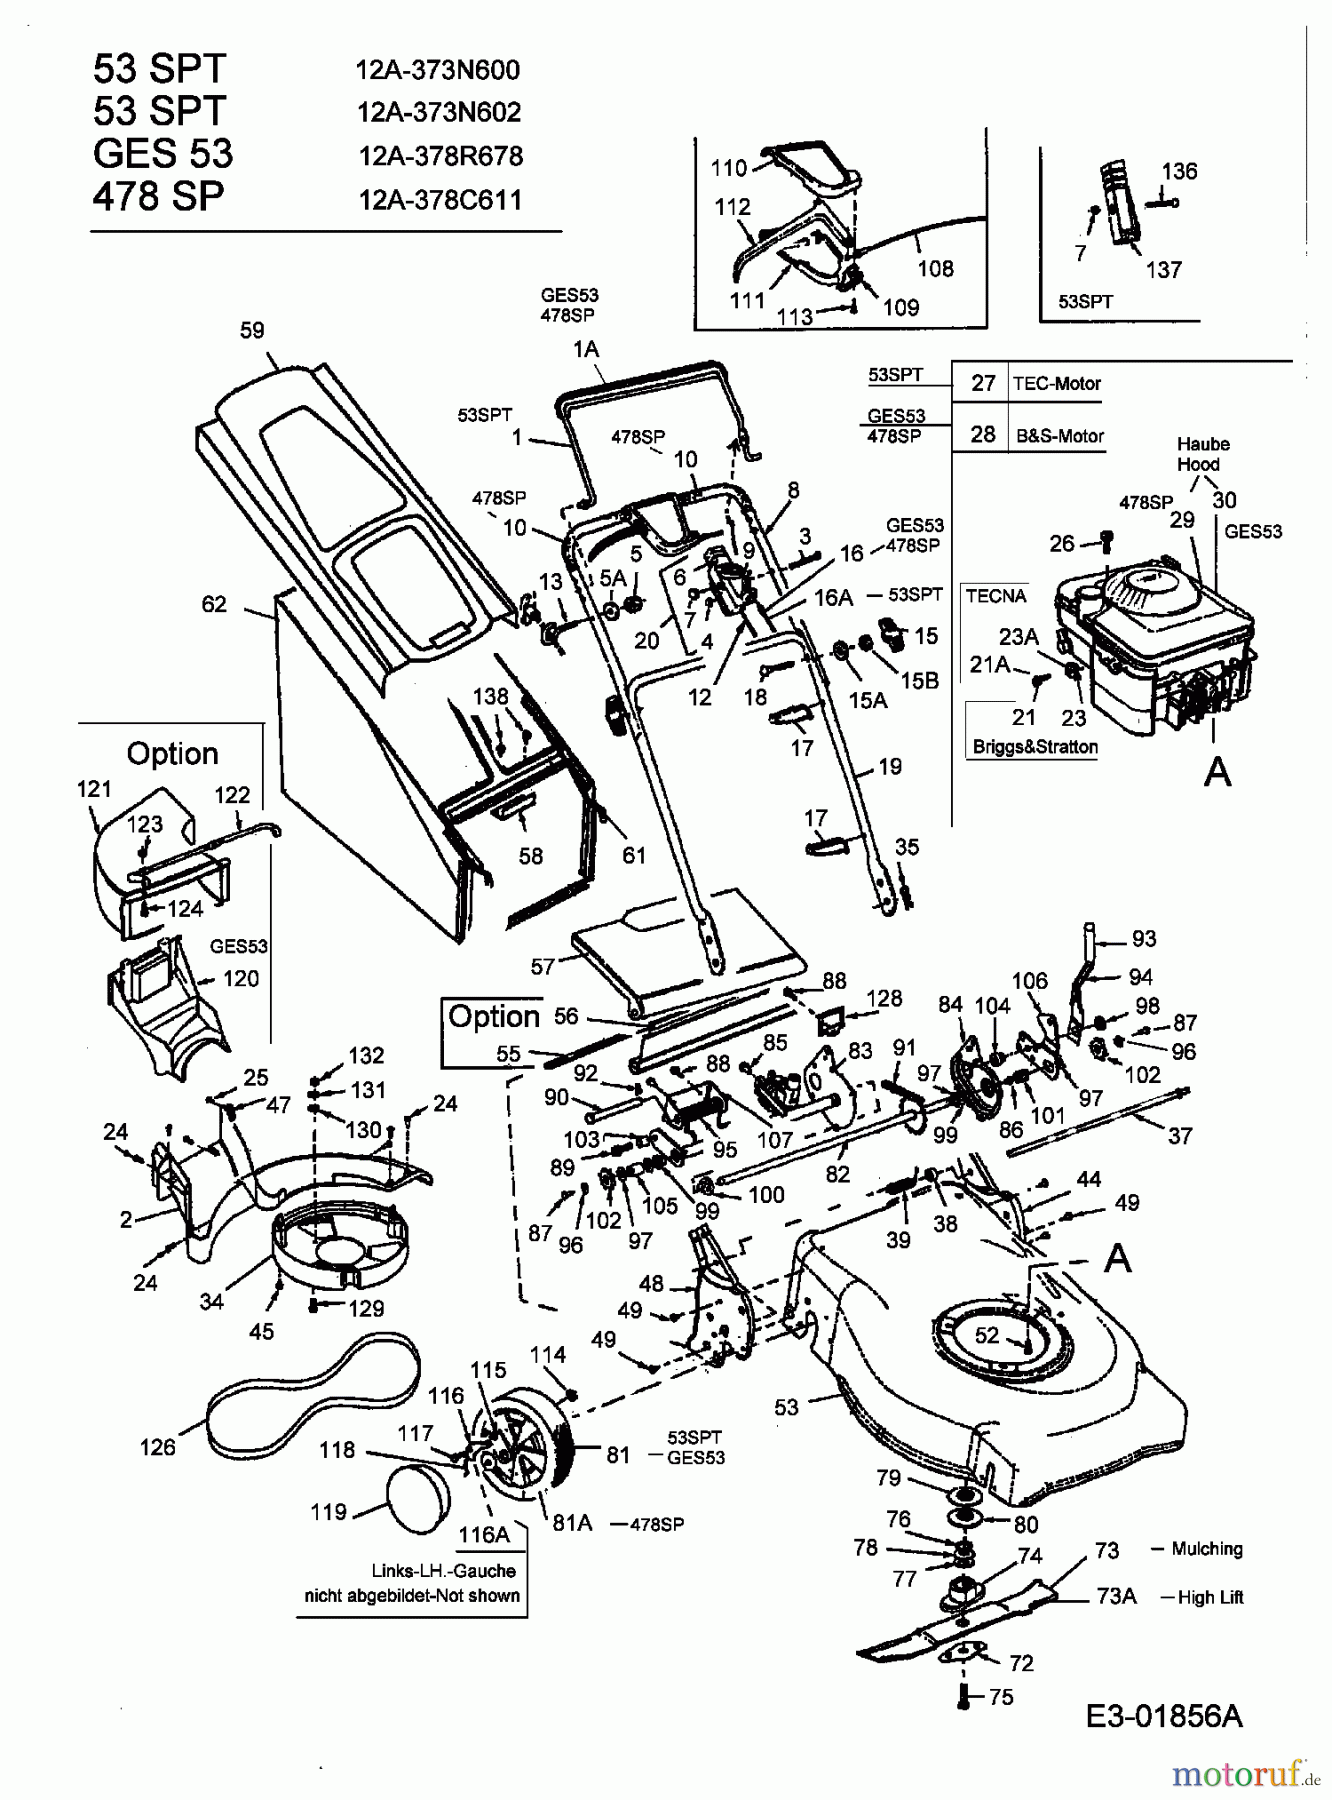  MTD Motormäher mit Antrieb GES 53 12A-378R678  (2003) Grundgerät